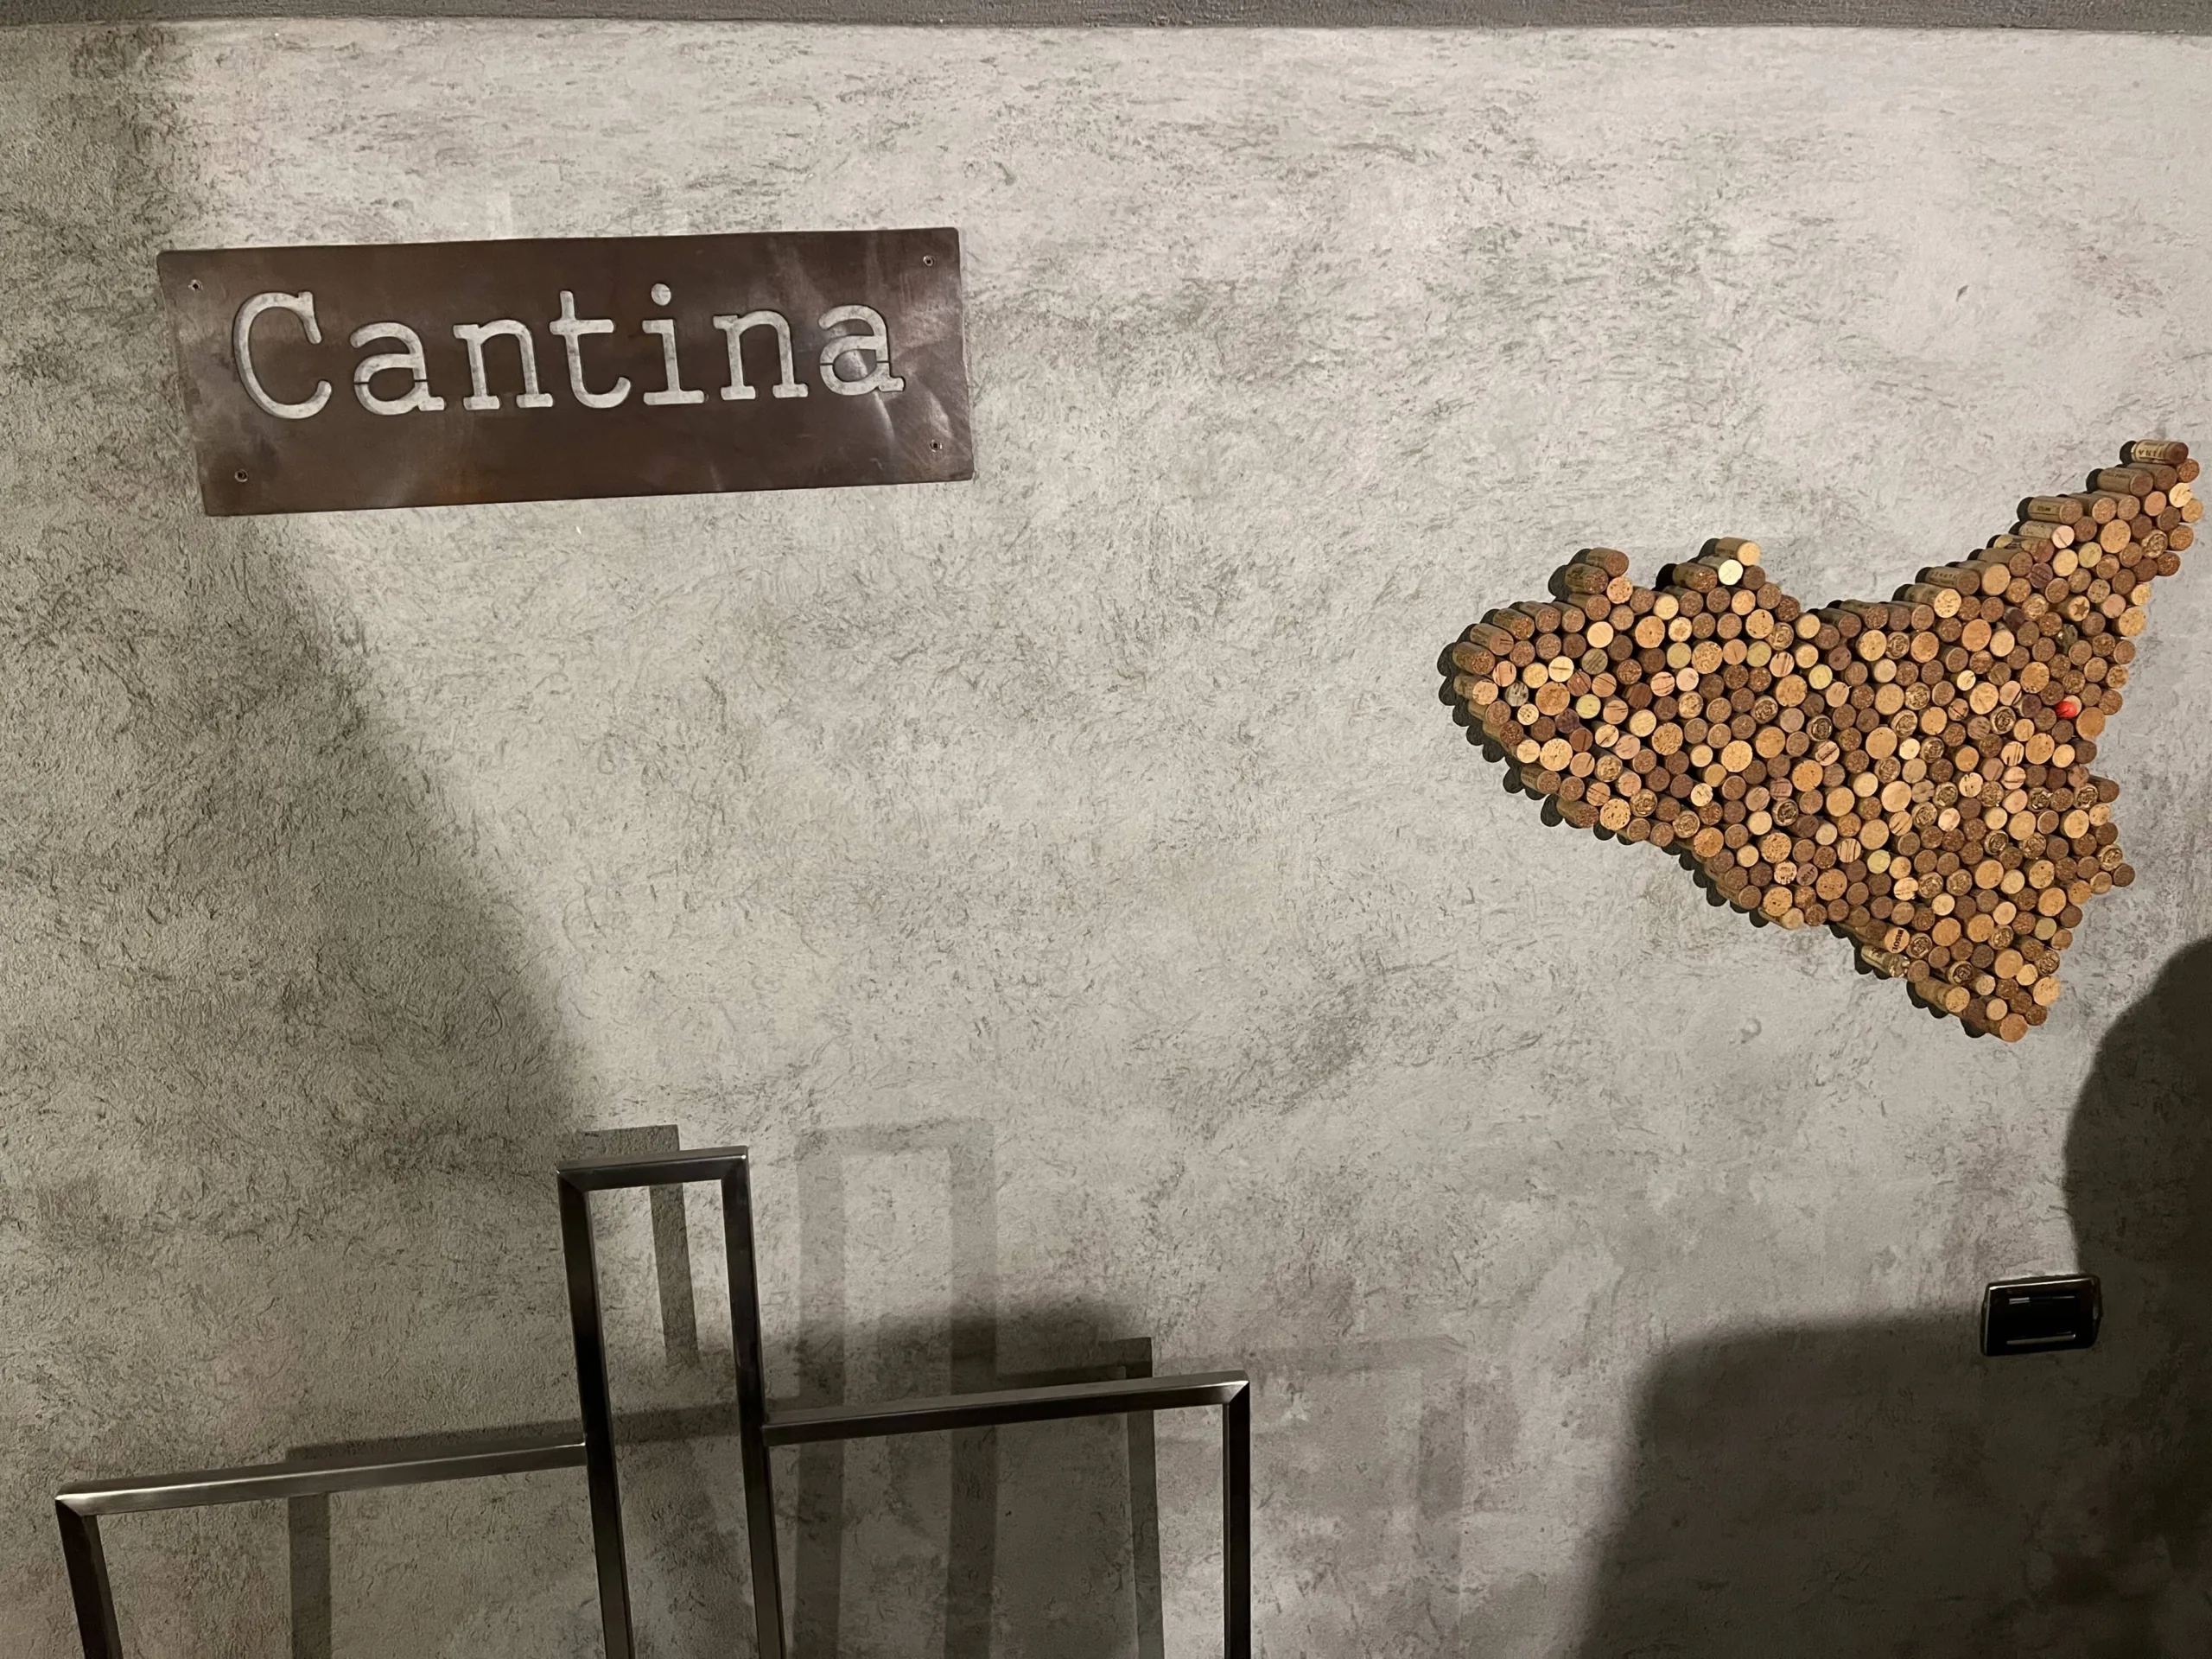 Cortile Siciliano - Cantina